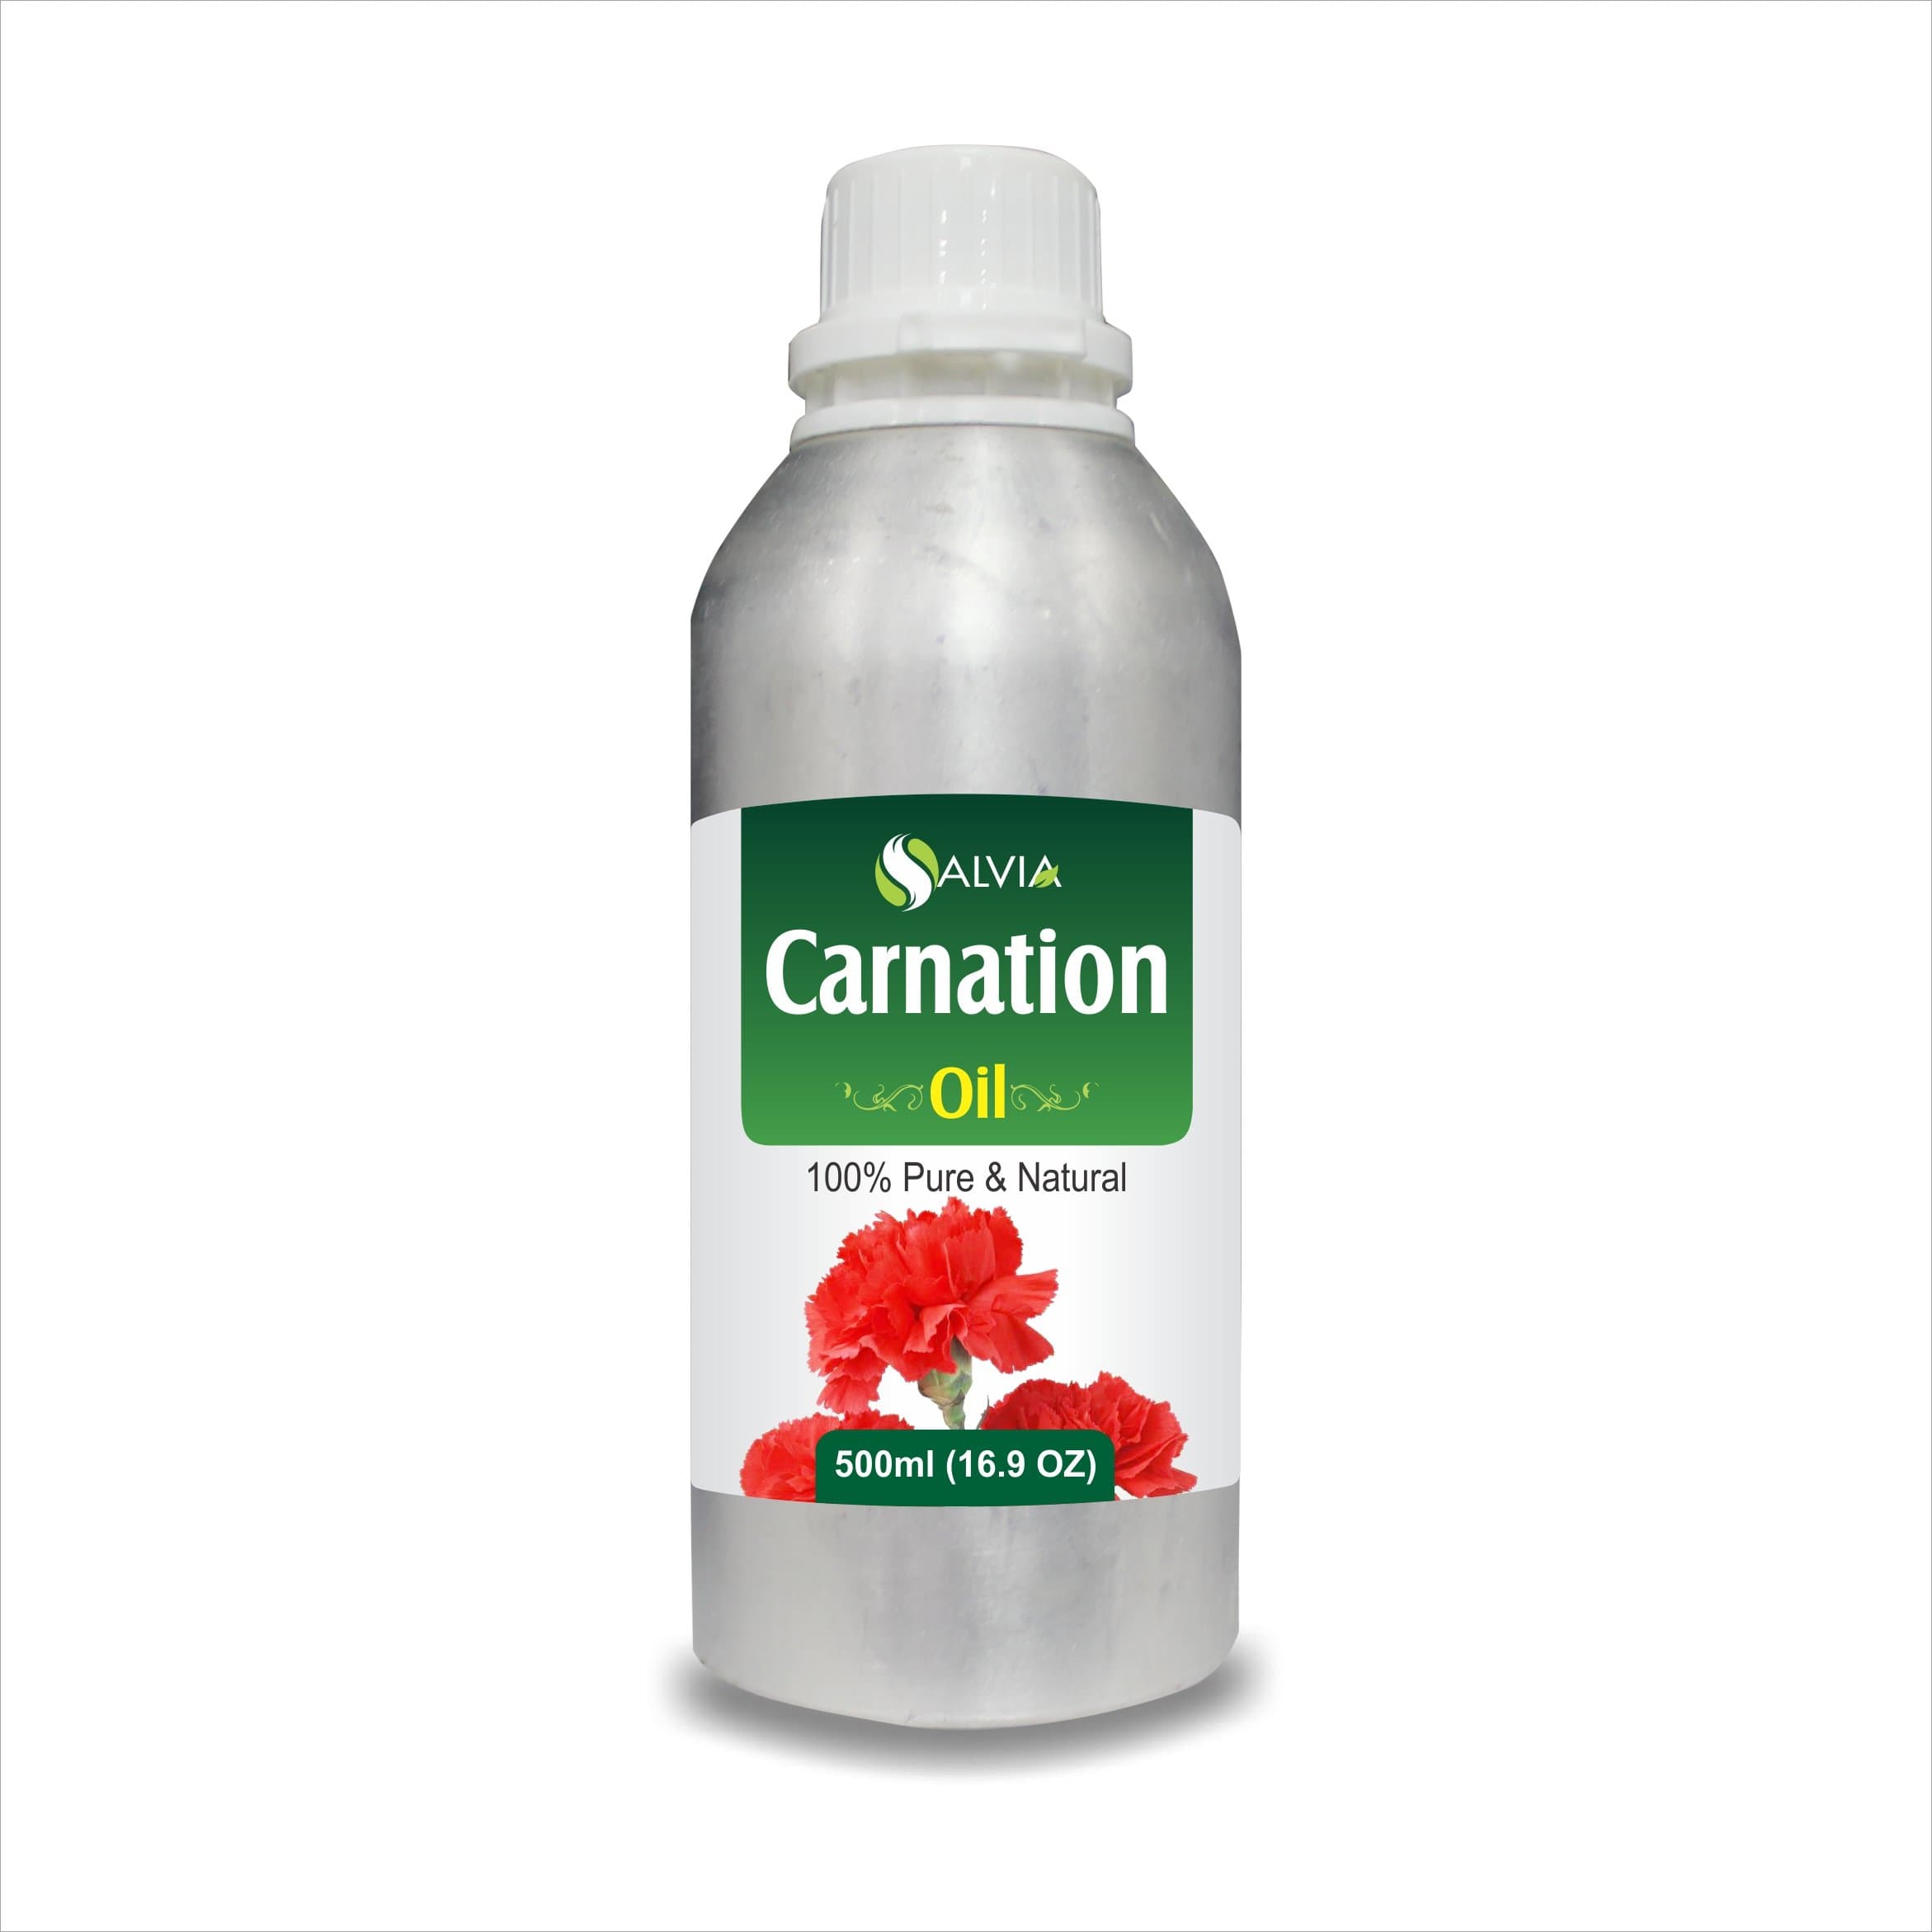 Carnation Oil uses